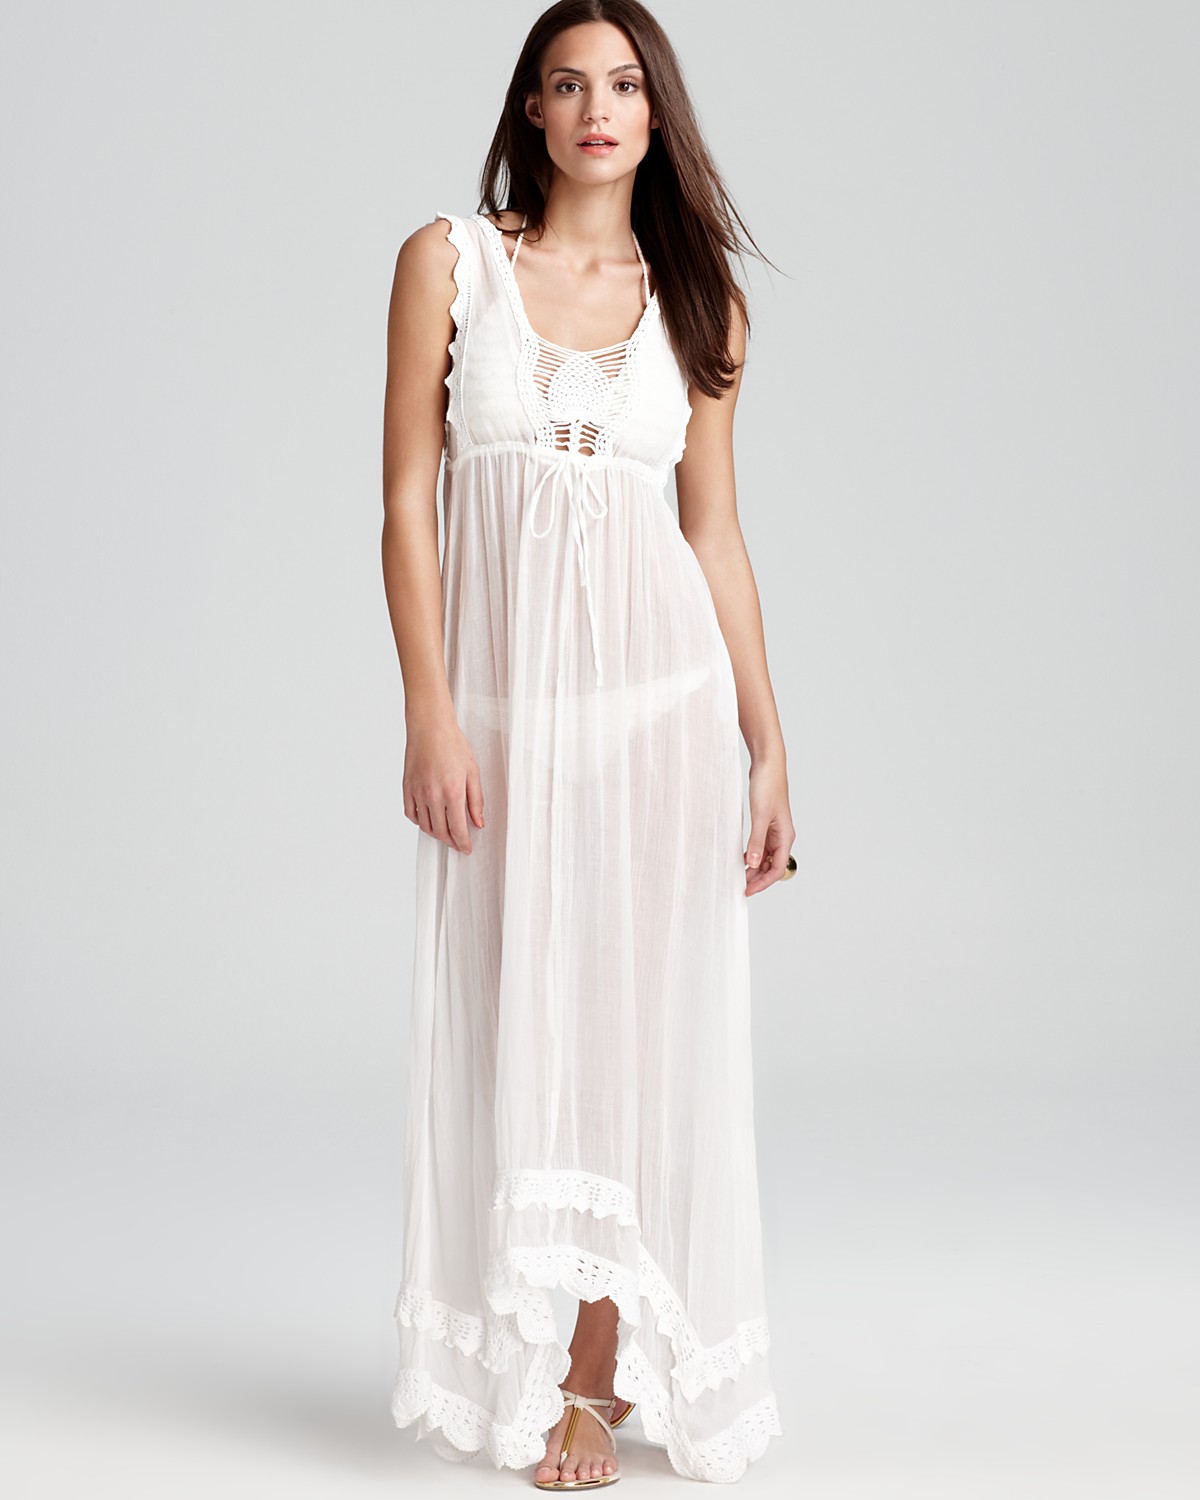 White Maxi Dress | DressedUpGirl.com